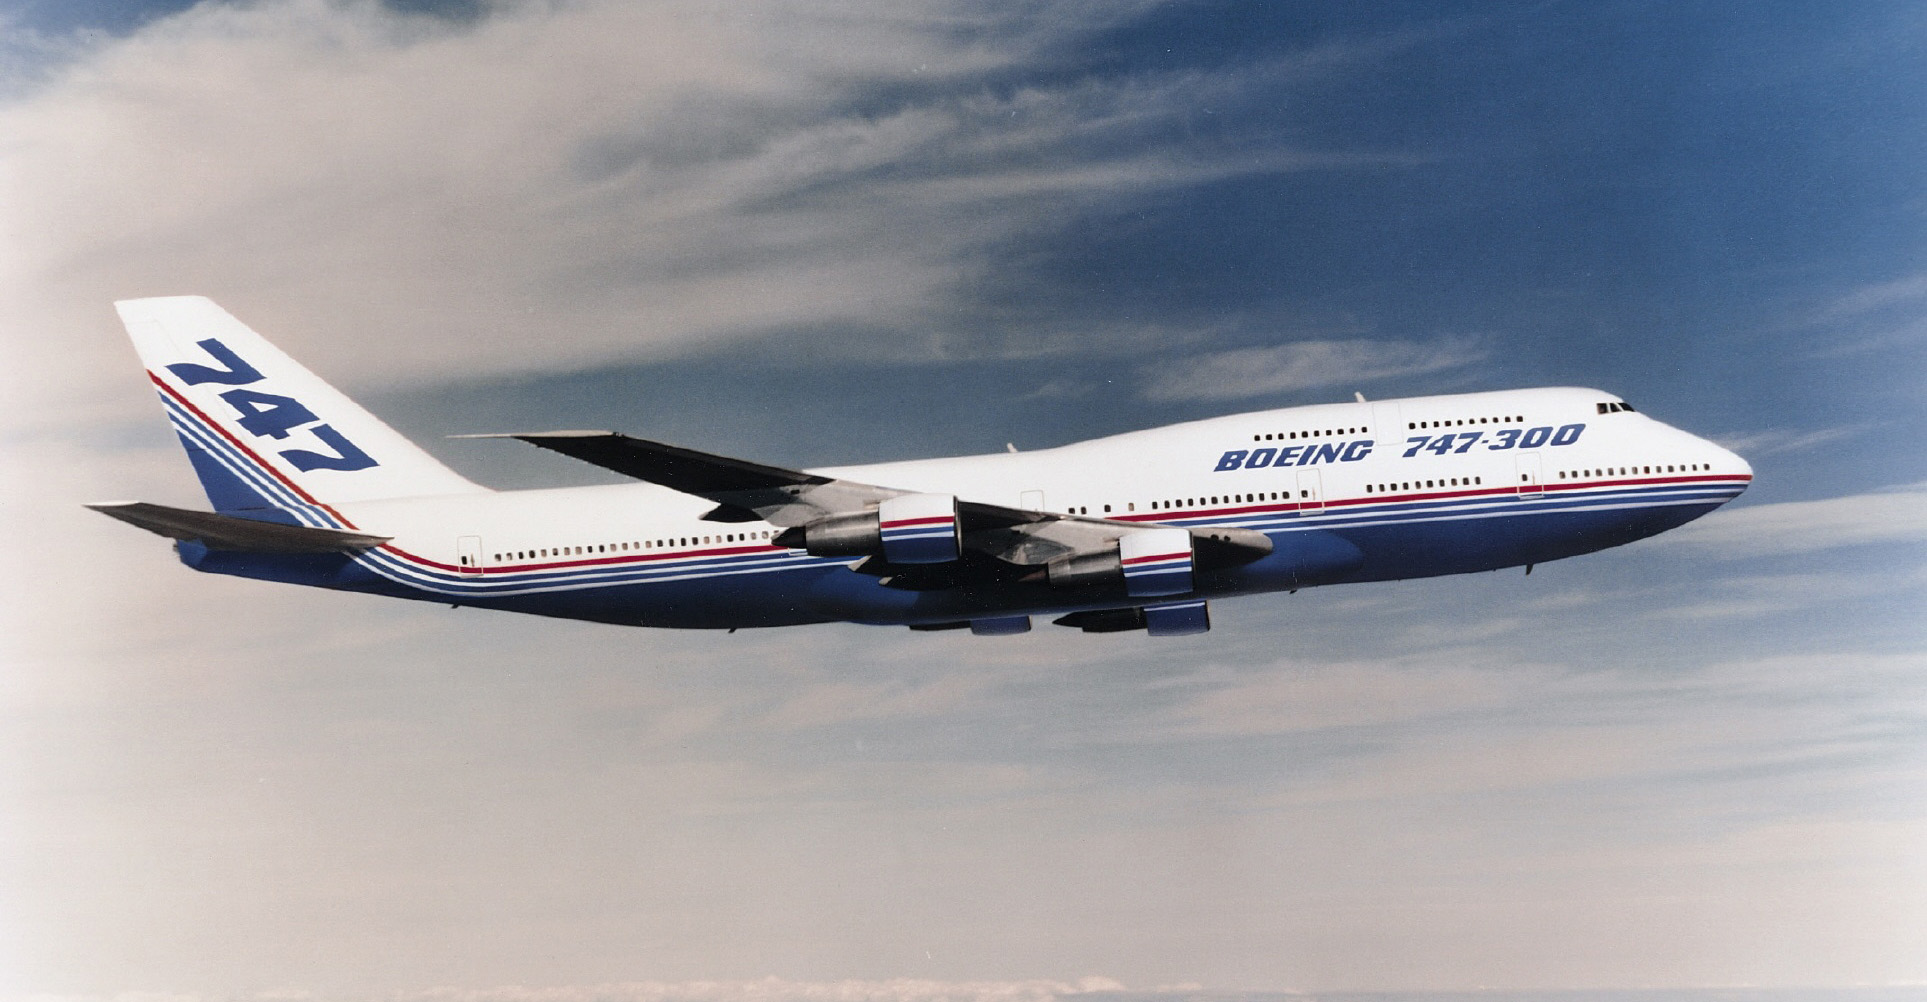 Boeing 747 300er Five Airways